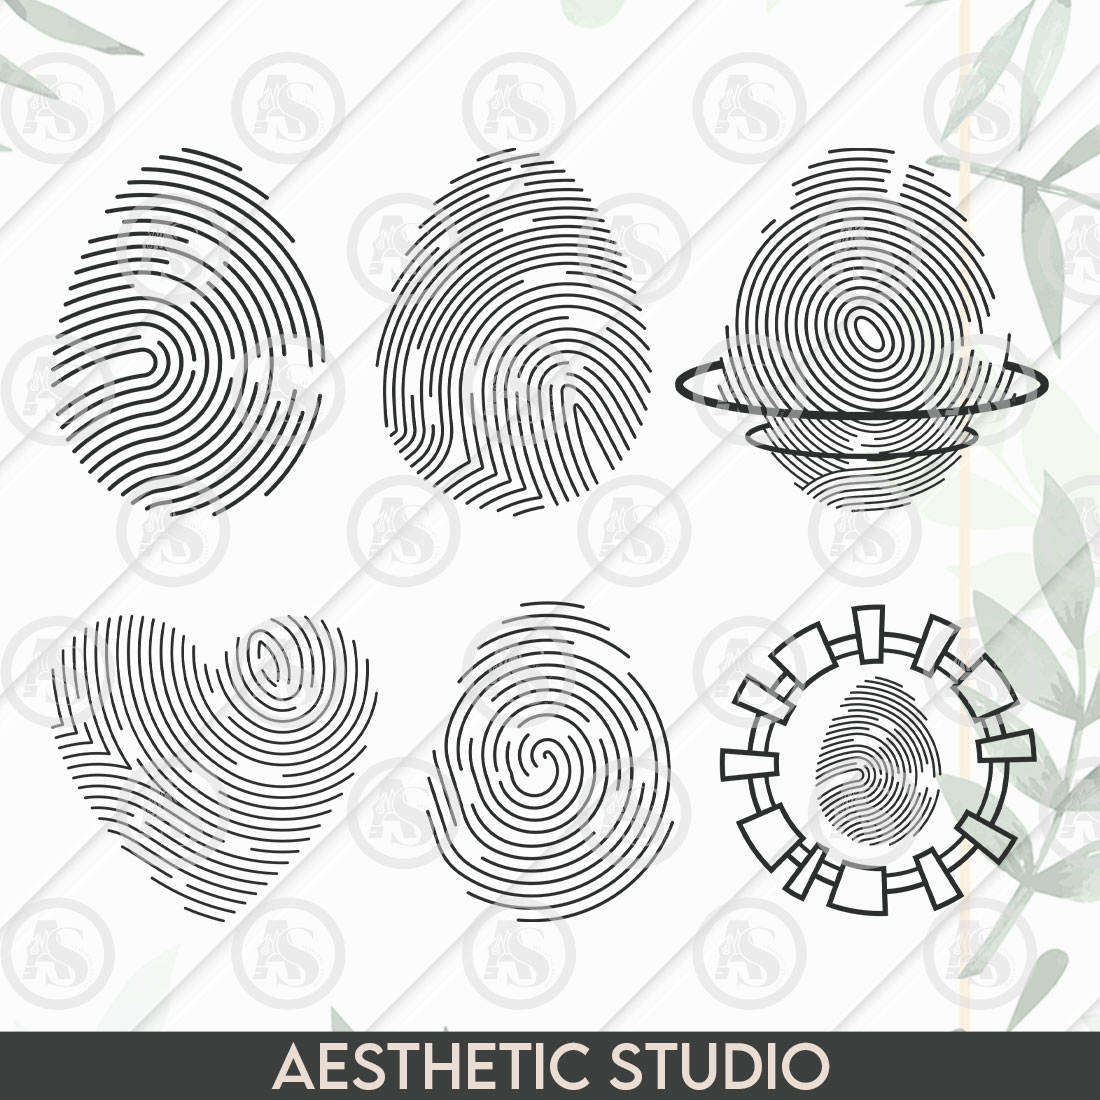 Fingerprint SVG, Finger Print, Thumbprint, Biometric, Heart Fingerprint, Scanner, Vector, Clipart, Eps, Cut file preview image.